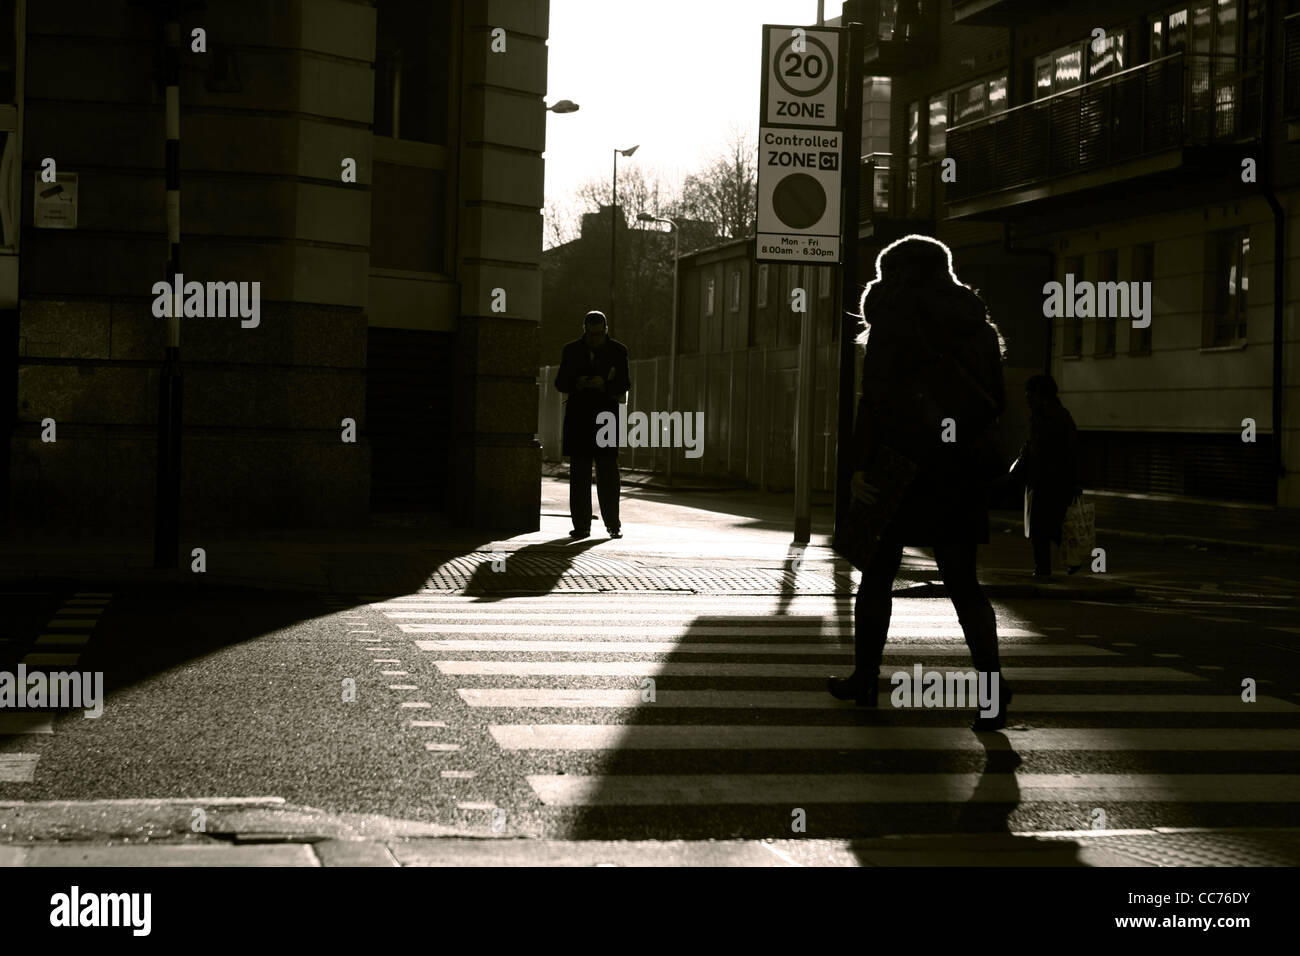 Une femme marche à travers un passage piétons à Londres et un homme se tient sur l'autre côté, photographié en sépia Banque D'Images